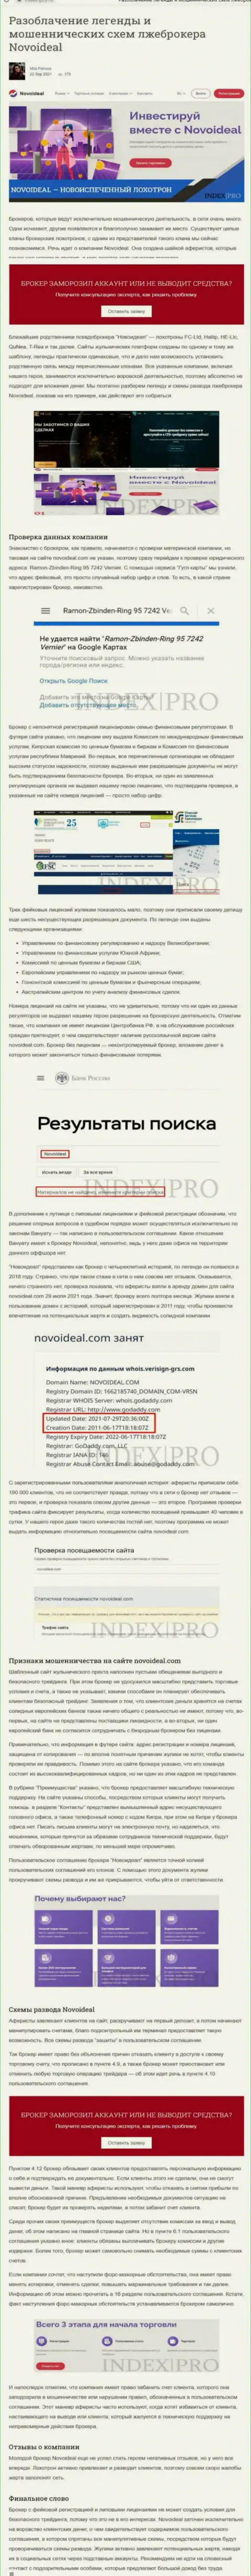 NovoIdeal - это ВОРЮГИ !!! статья со свидетельством незаконных деяний